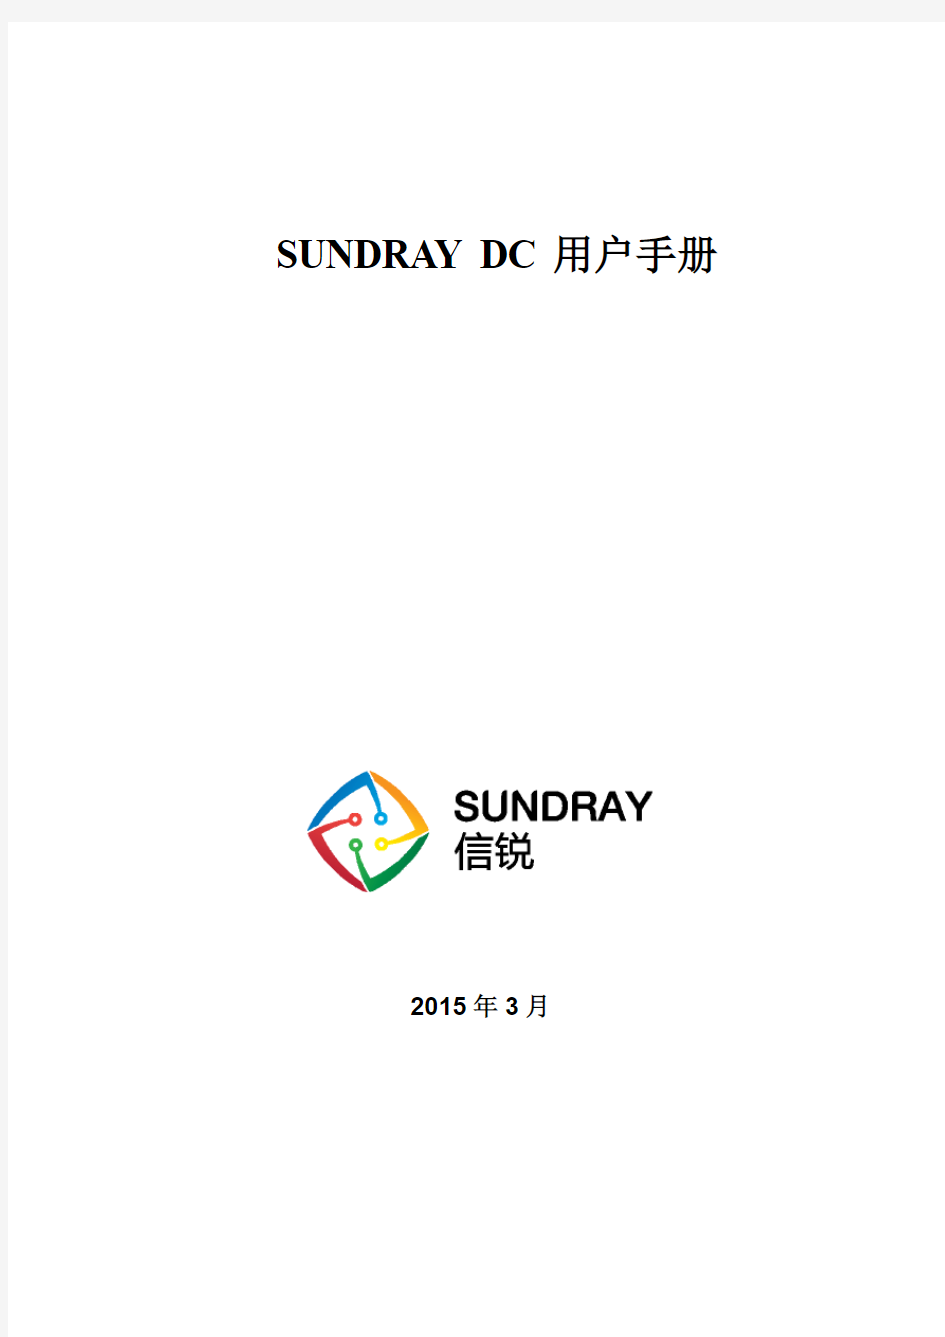 SUNDRAY_DC_v2.4_Manual_CN_20150408